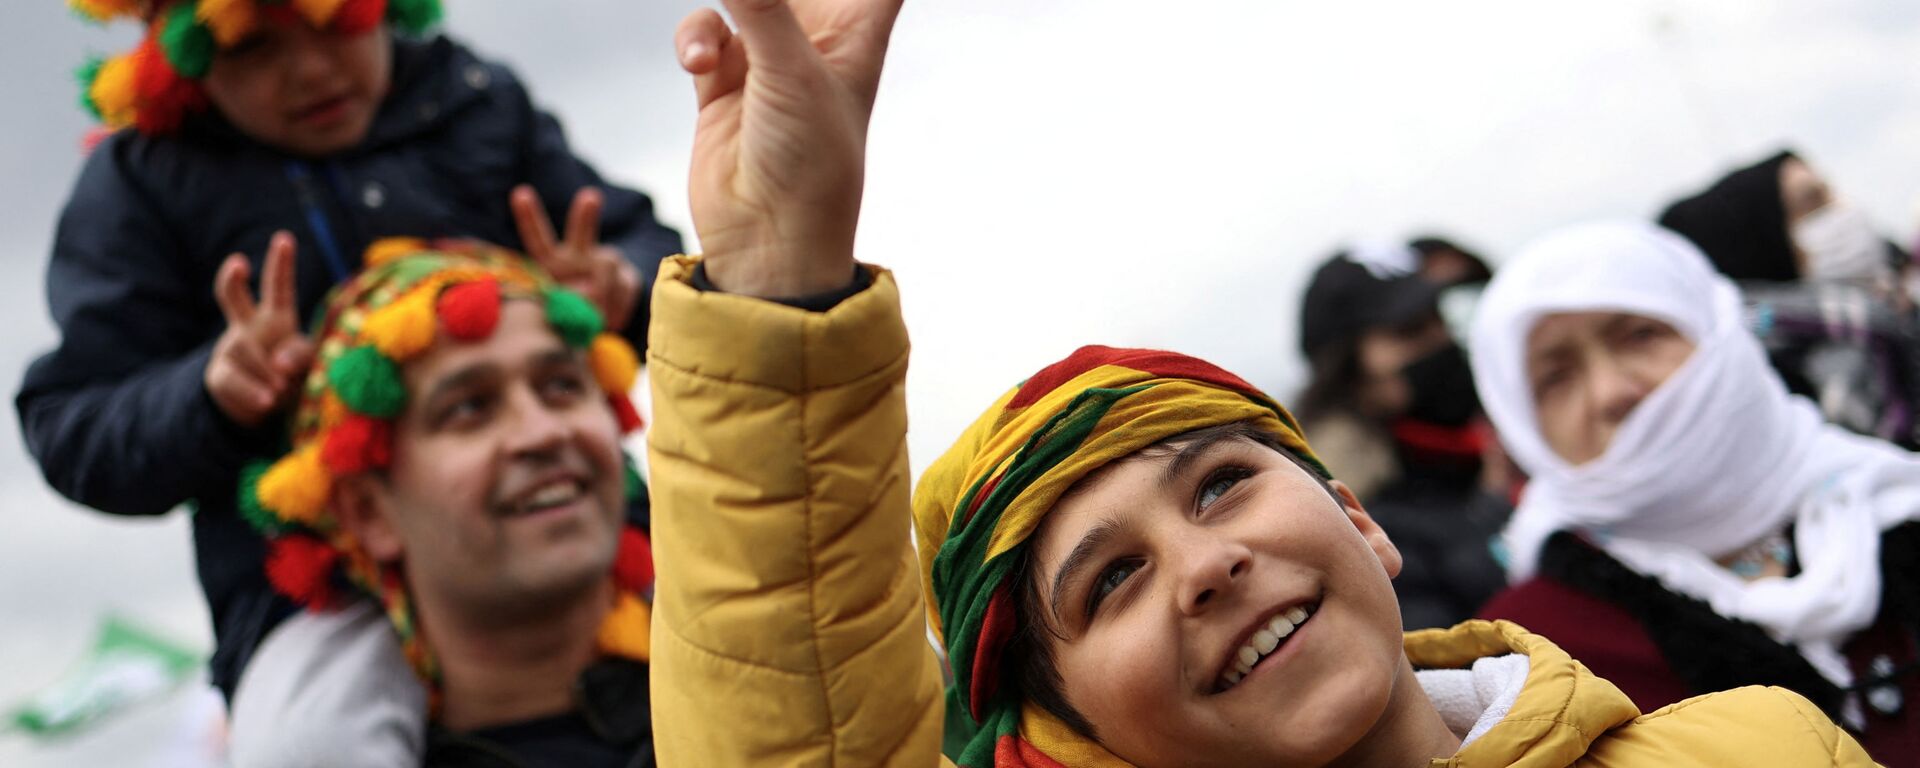 الحاضرون يرفعون أصابعهم في لافتة سلام خلال احتفال النوروز، الذي يصادف قدوم الربيع، في اسطنبول، تركيا، 20 مارس 2022. - سبوتنيك عربي, 1920, 21.03.2022